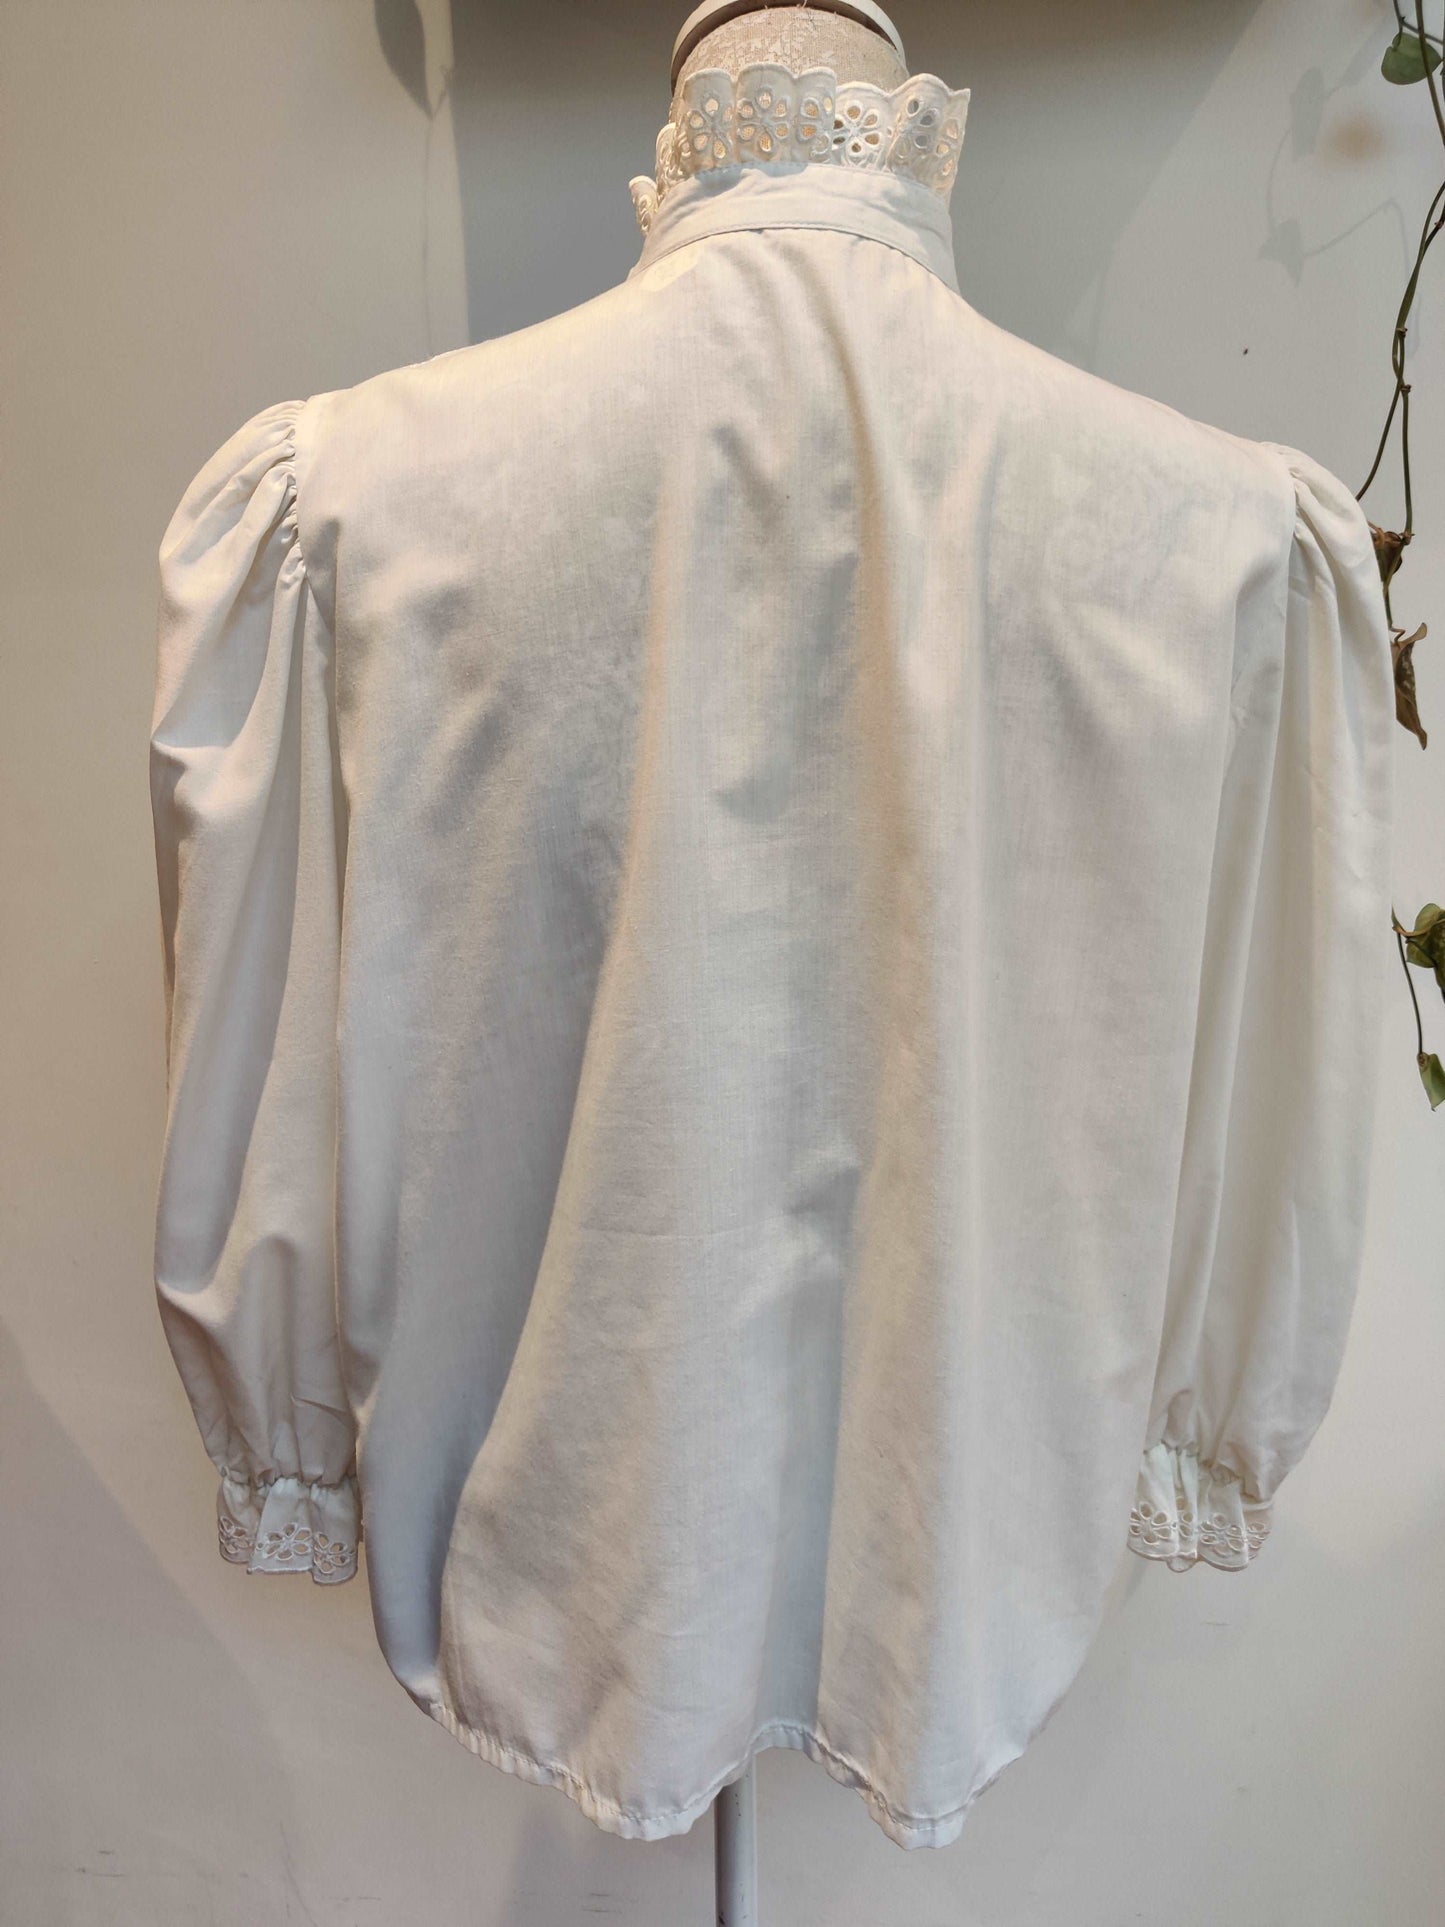 size 14-16 white prairie shirt